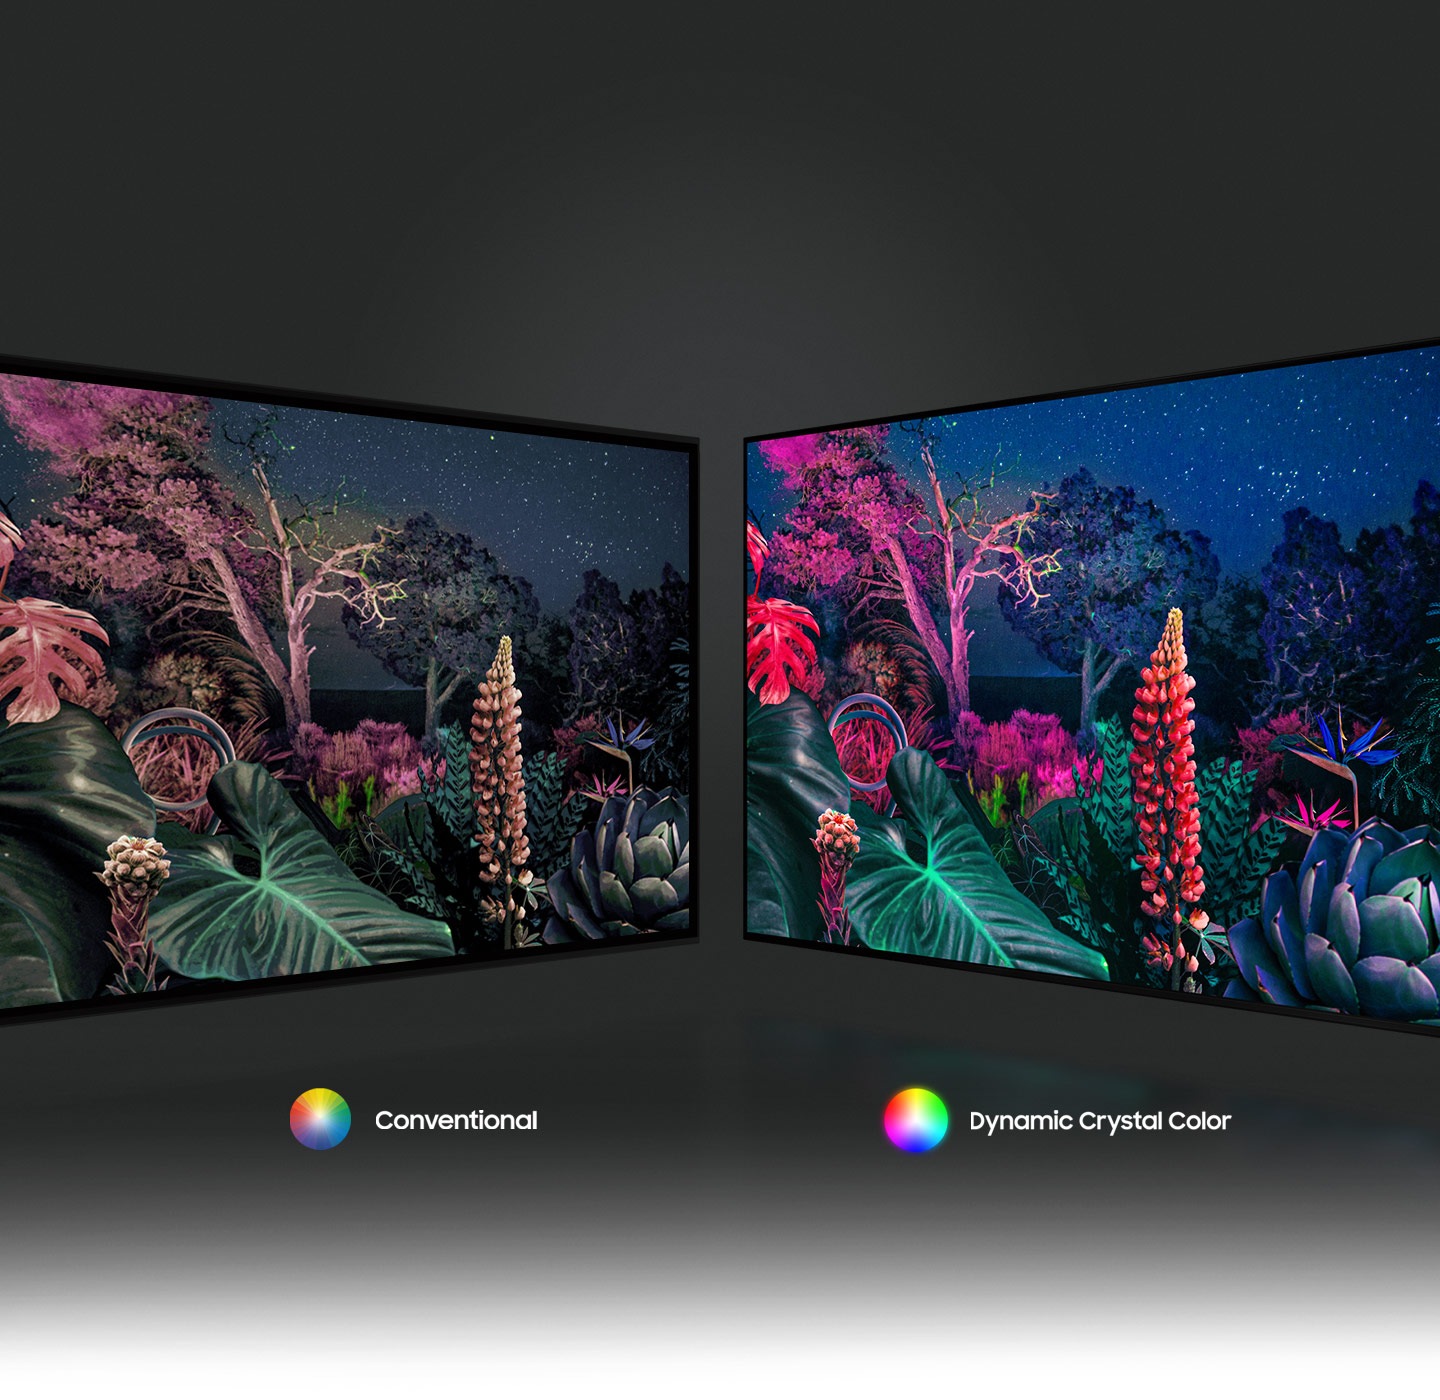 Hình ảnh khu rừng bên phải thể hiện hình ảnh có màu sắc phức tạp hơn so với công nghệ thông thường ở bên trái nhờ công nghệ Dynamic Crystal Color.